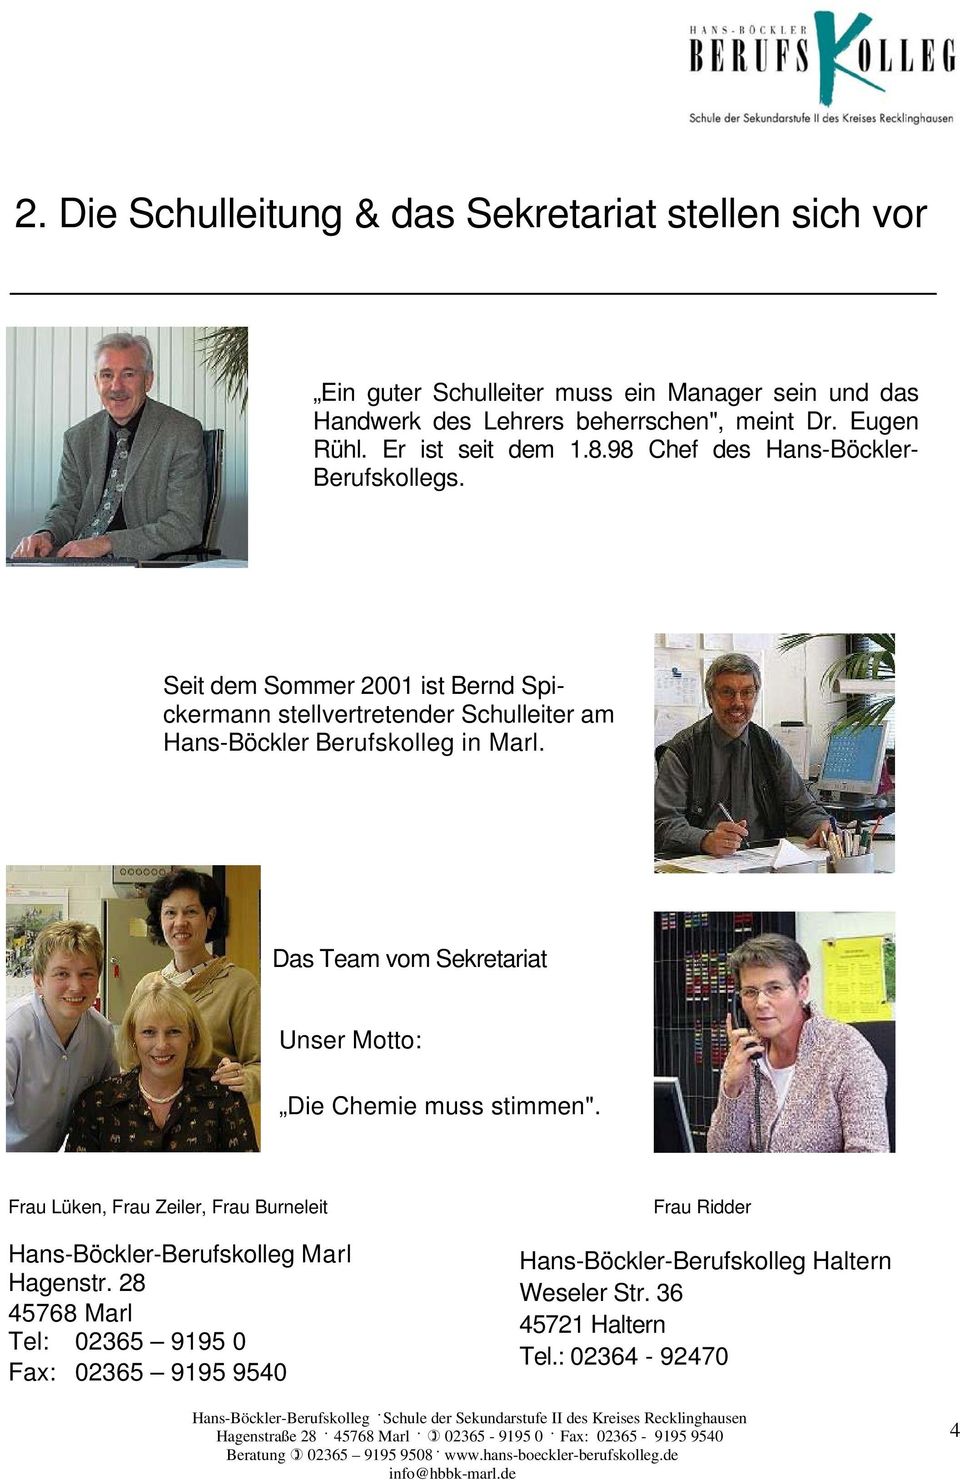 Seit dem Sommer 2001 ist Bernd Spickermann stellvertretender Schulleiter am Hans-Böckler Berufskolleg in Marl.